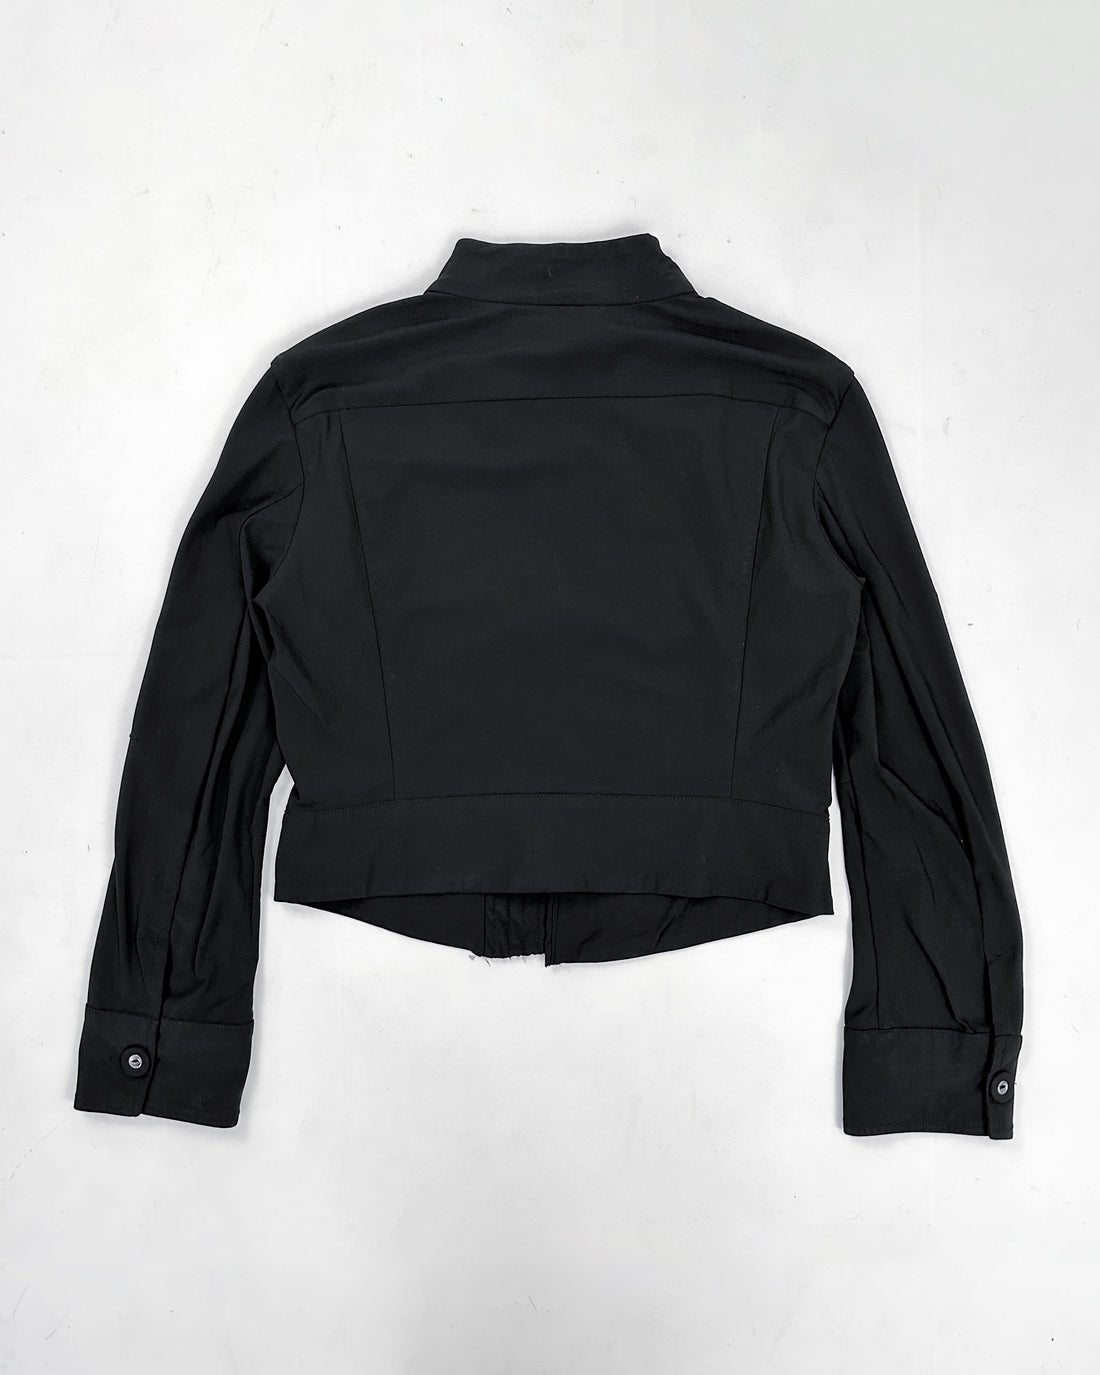 Marithé Francois Girbaud Black Straight Jacket 2000's